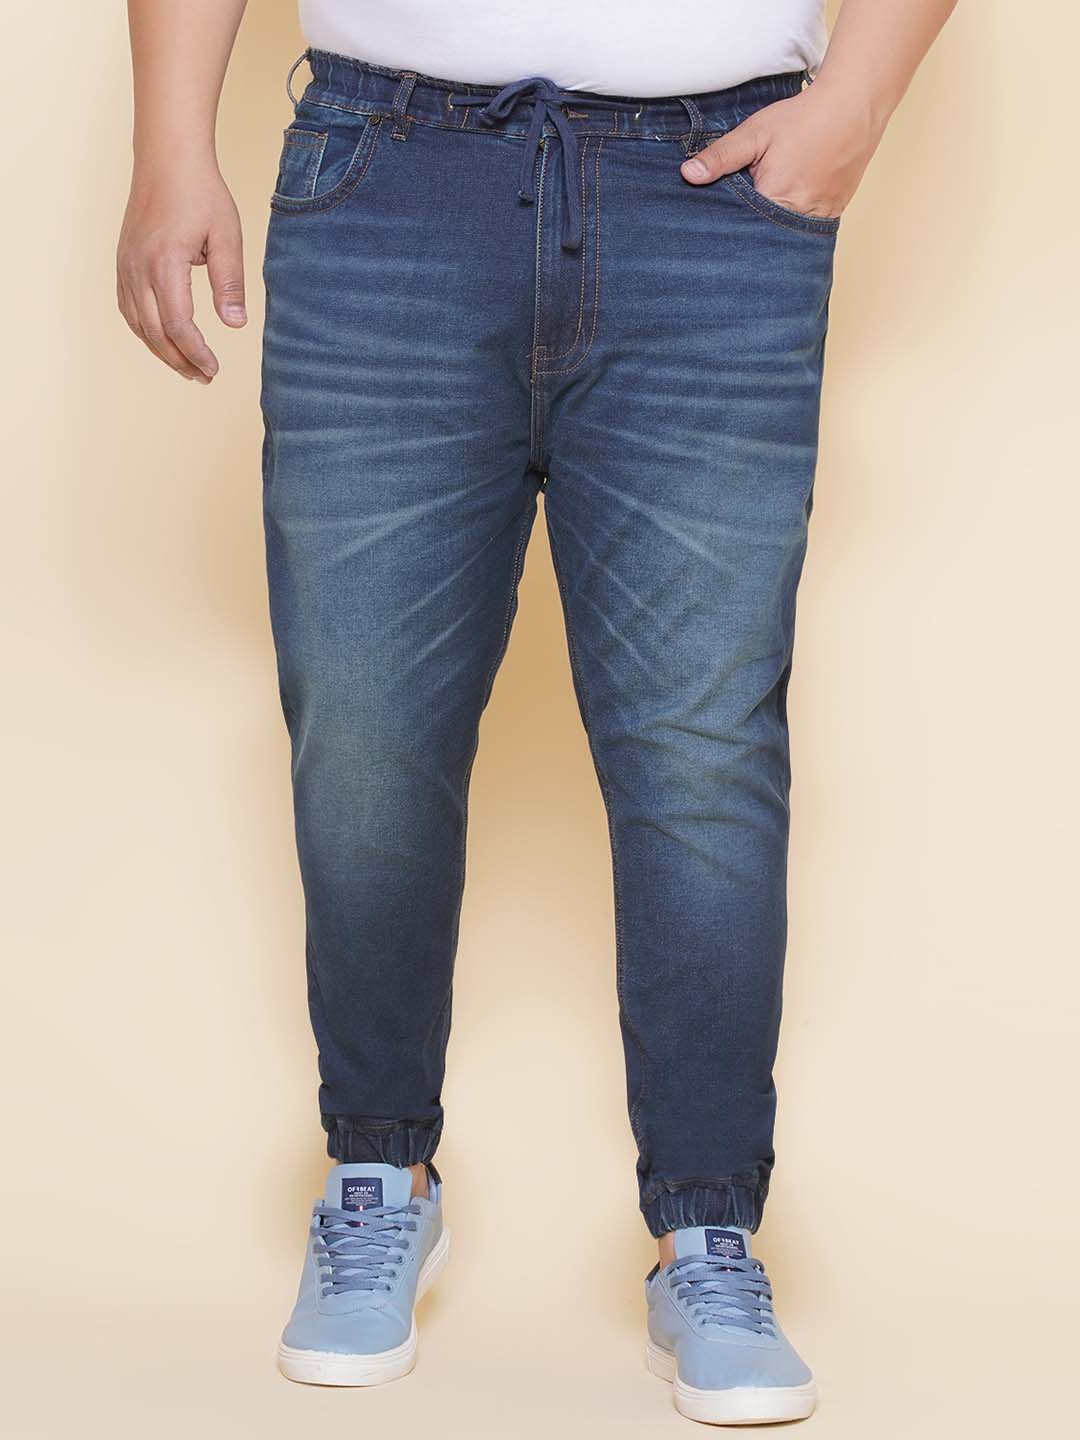 bottomwear/jeans/JPJ27102/jpj27102-1.jpg